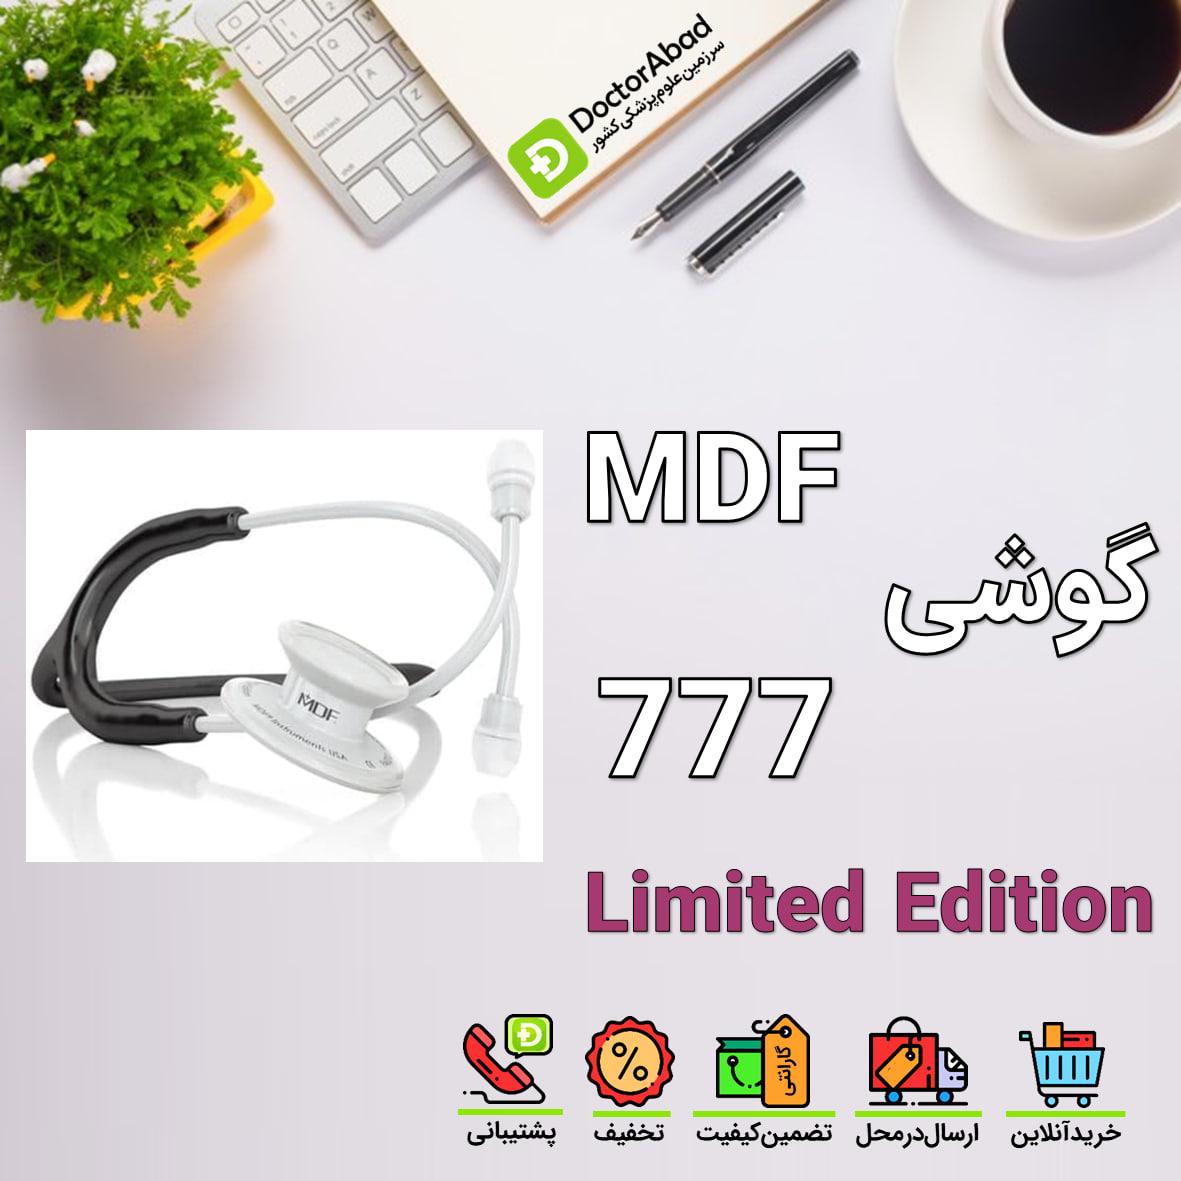 گوشی پزشکی mdf 777 Limited Edition فول سفید تیوب مشکی